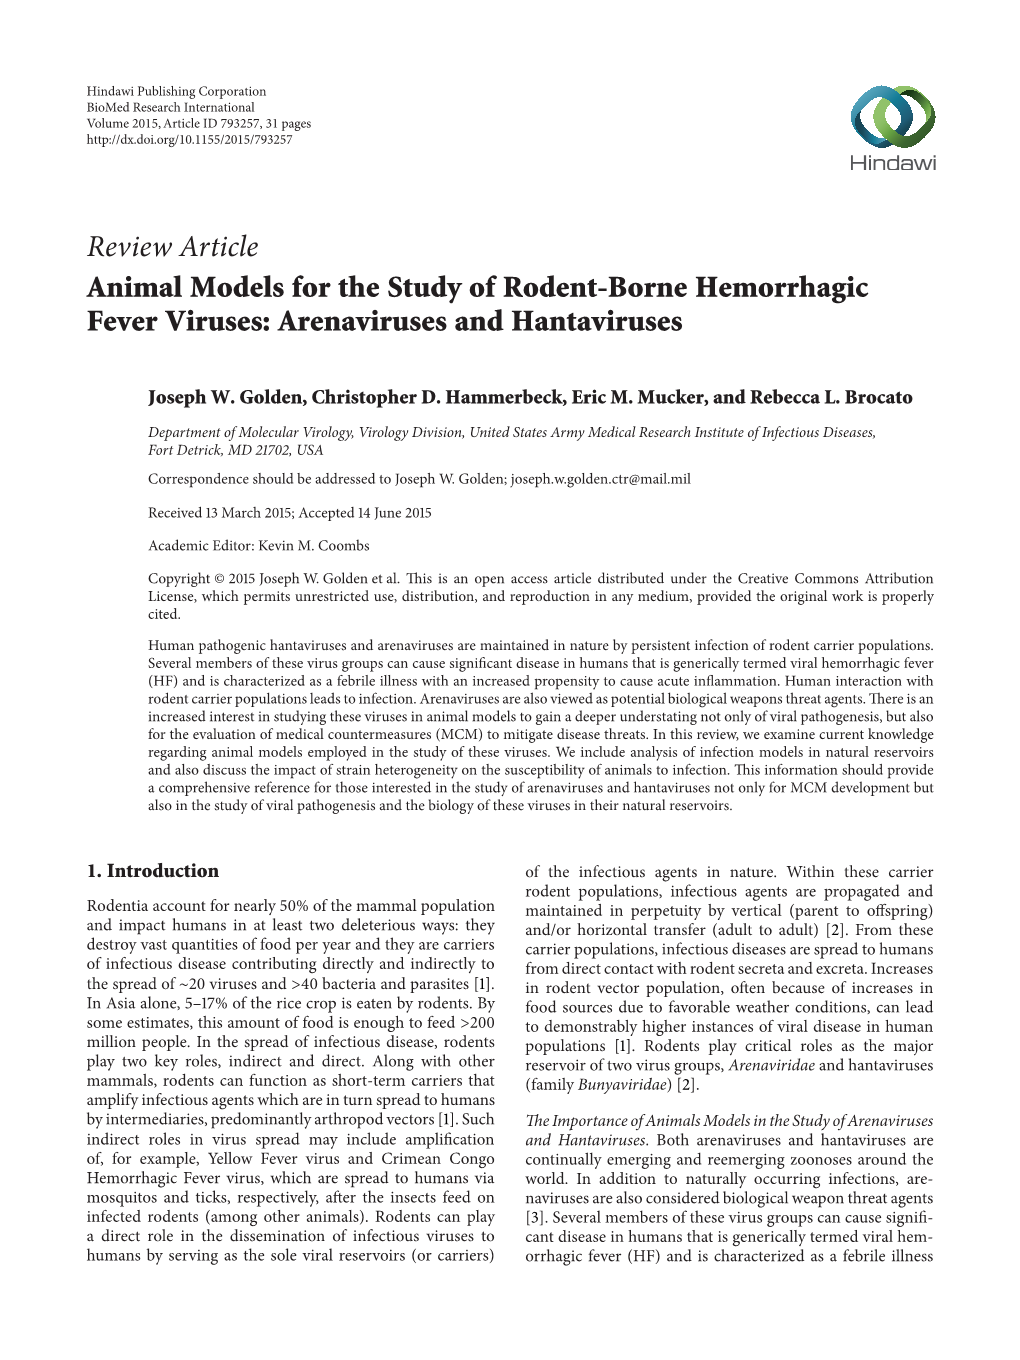 Review Article Animal Models for the Study of Rodent-Borne Hemorrhagic Fever Viruses: Arenaviruses and Hantaviruses